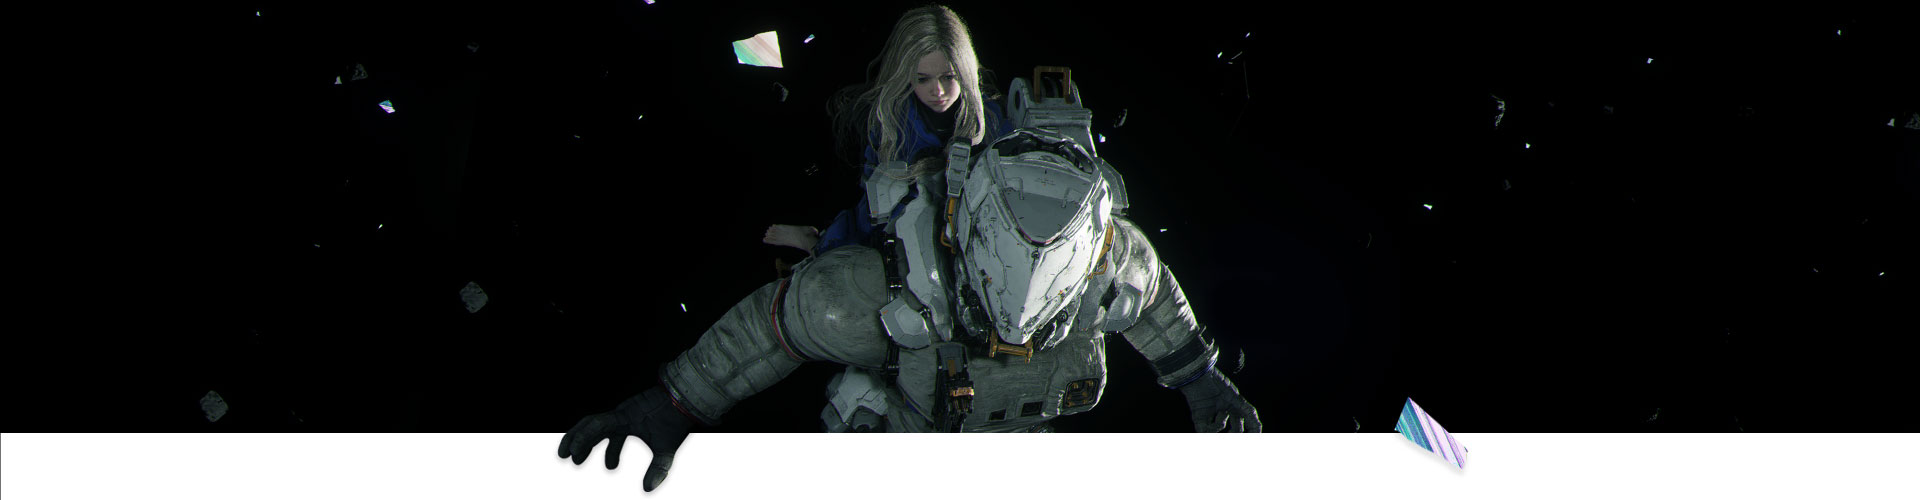 Dziewczynka i astronauta dryfują razem w przestrzeni kosmicznej